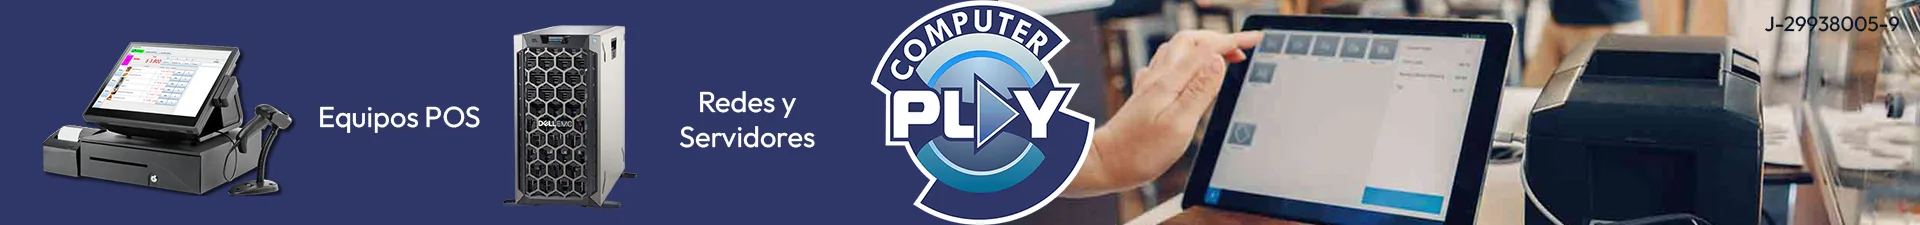 Imagen 1 del perfil de Computer Play